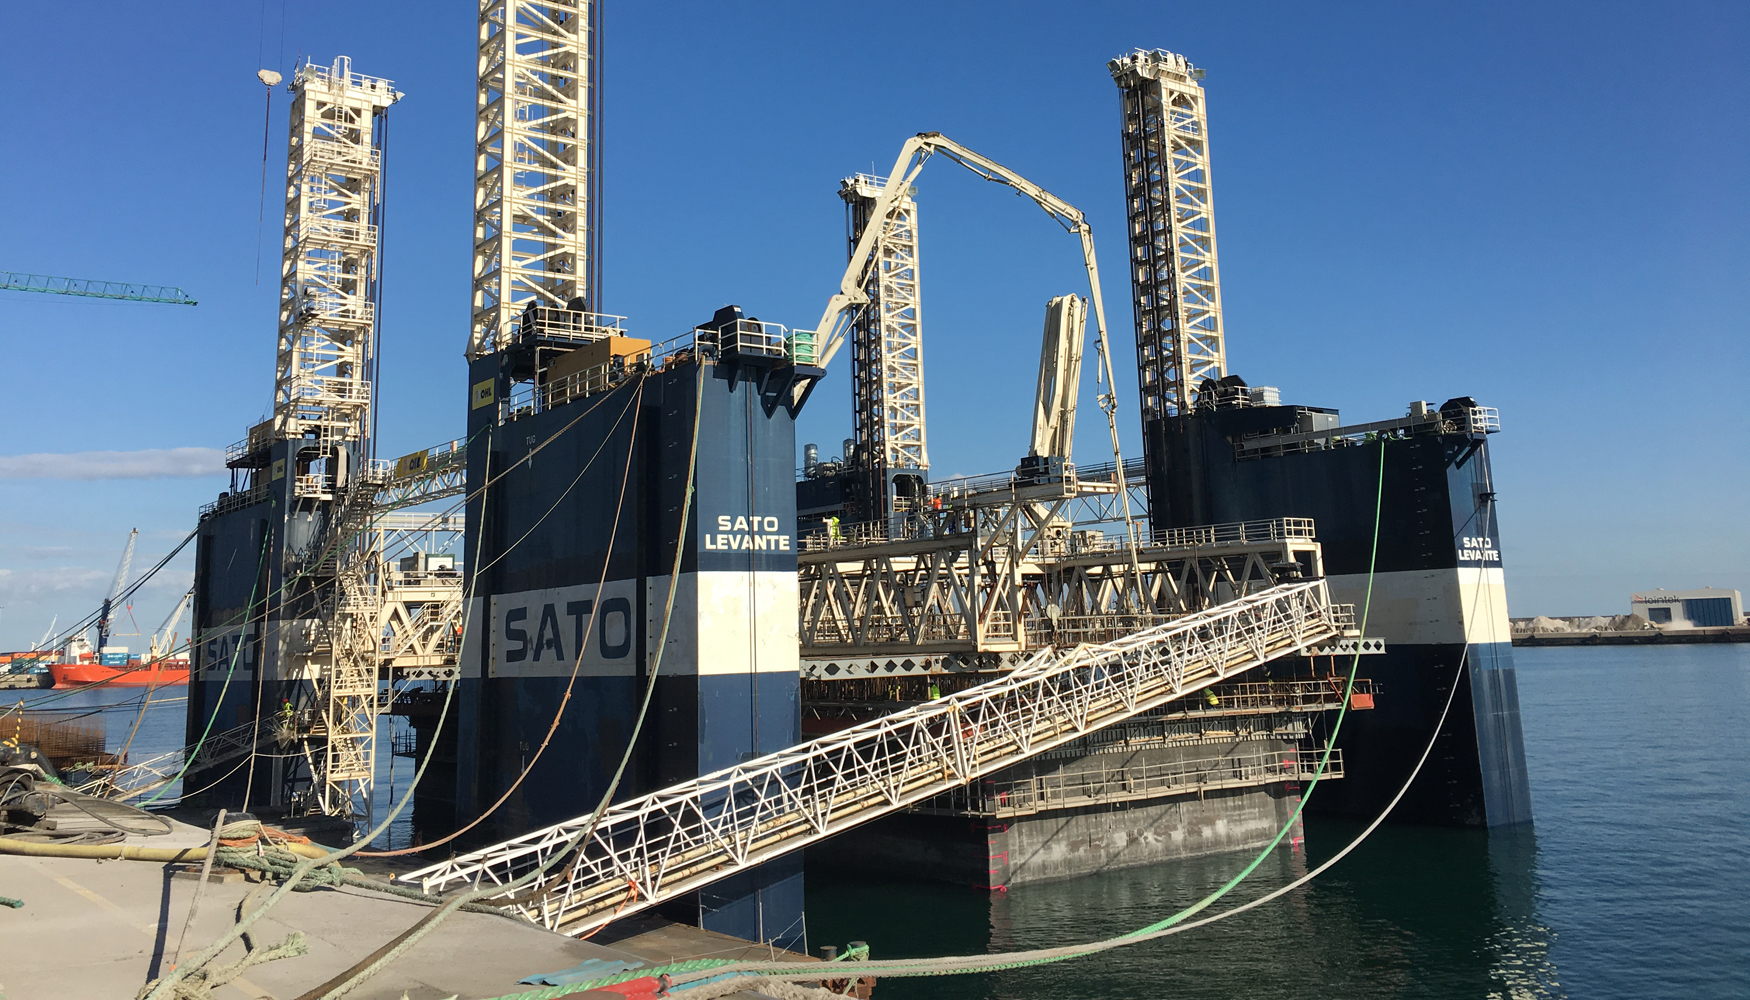 MC Spain suministra 505 toneladas de aditivos para 22 cajones flotantes de hormigón en el puerto de Bilbao